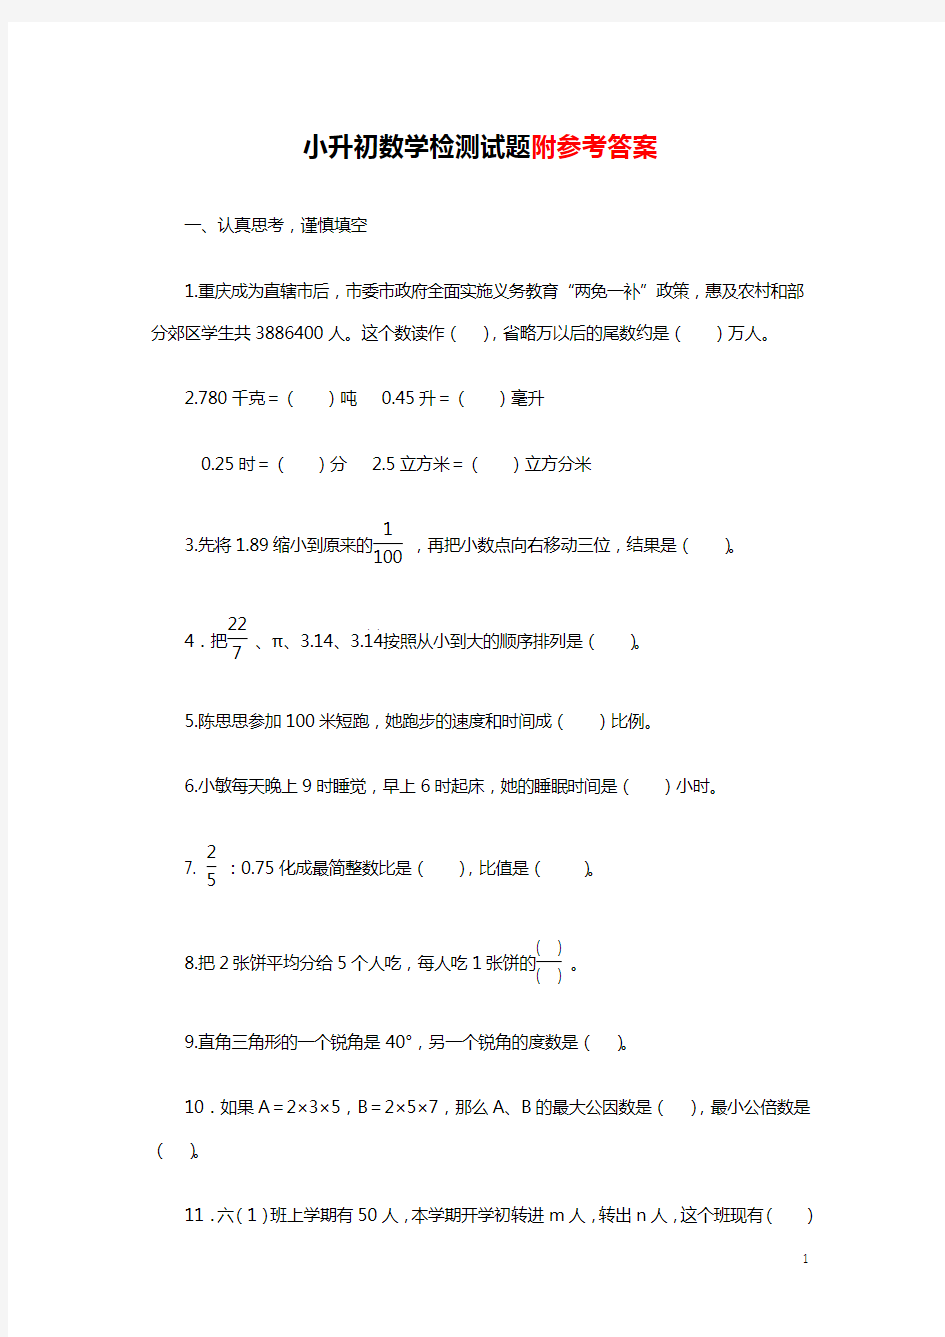 【2018最新】重庆市小升初数学检测试题及答案(经典题型汇总)